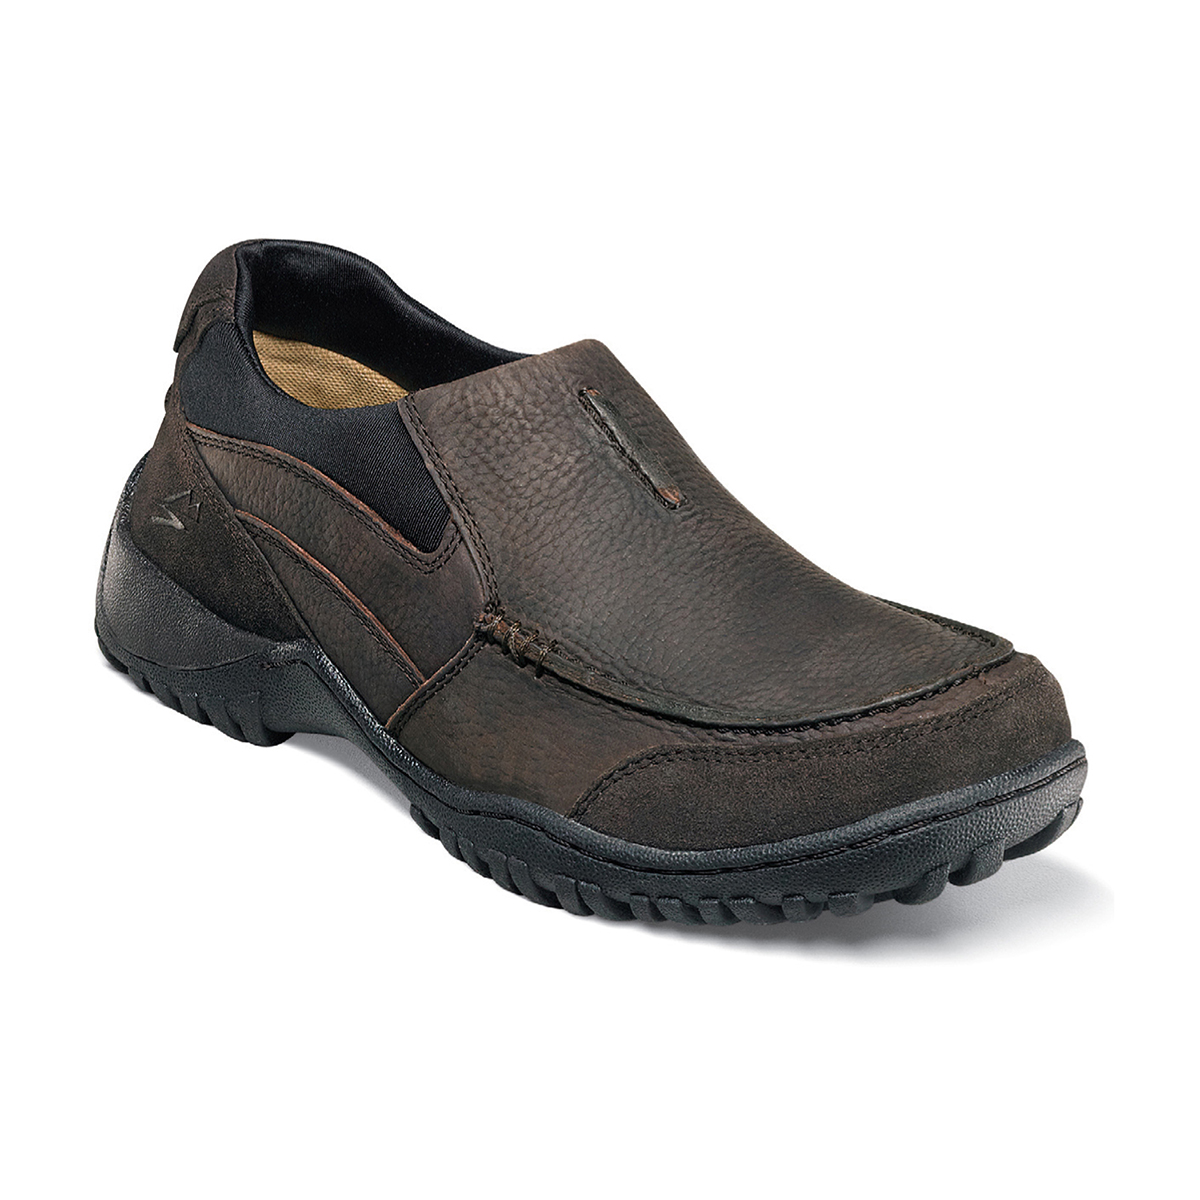 Men's Casual Shoes | Brown Tumbled Moc Toe Slip On | Nunn Bush Portage